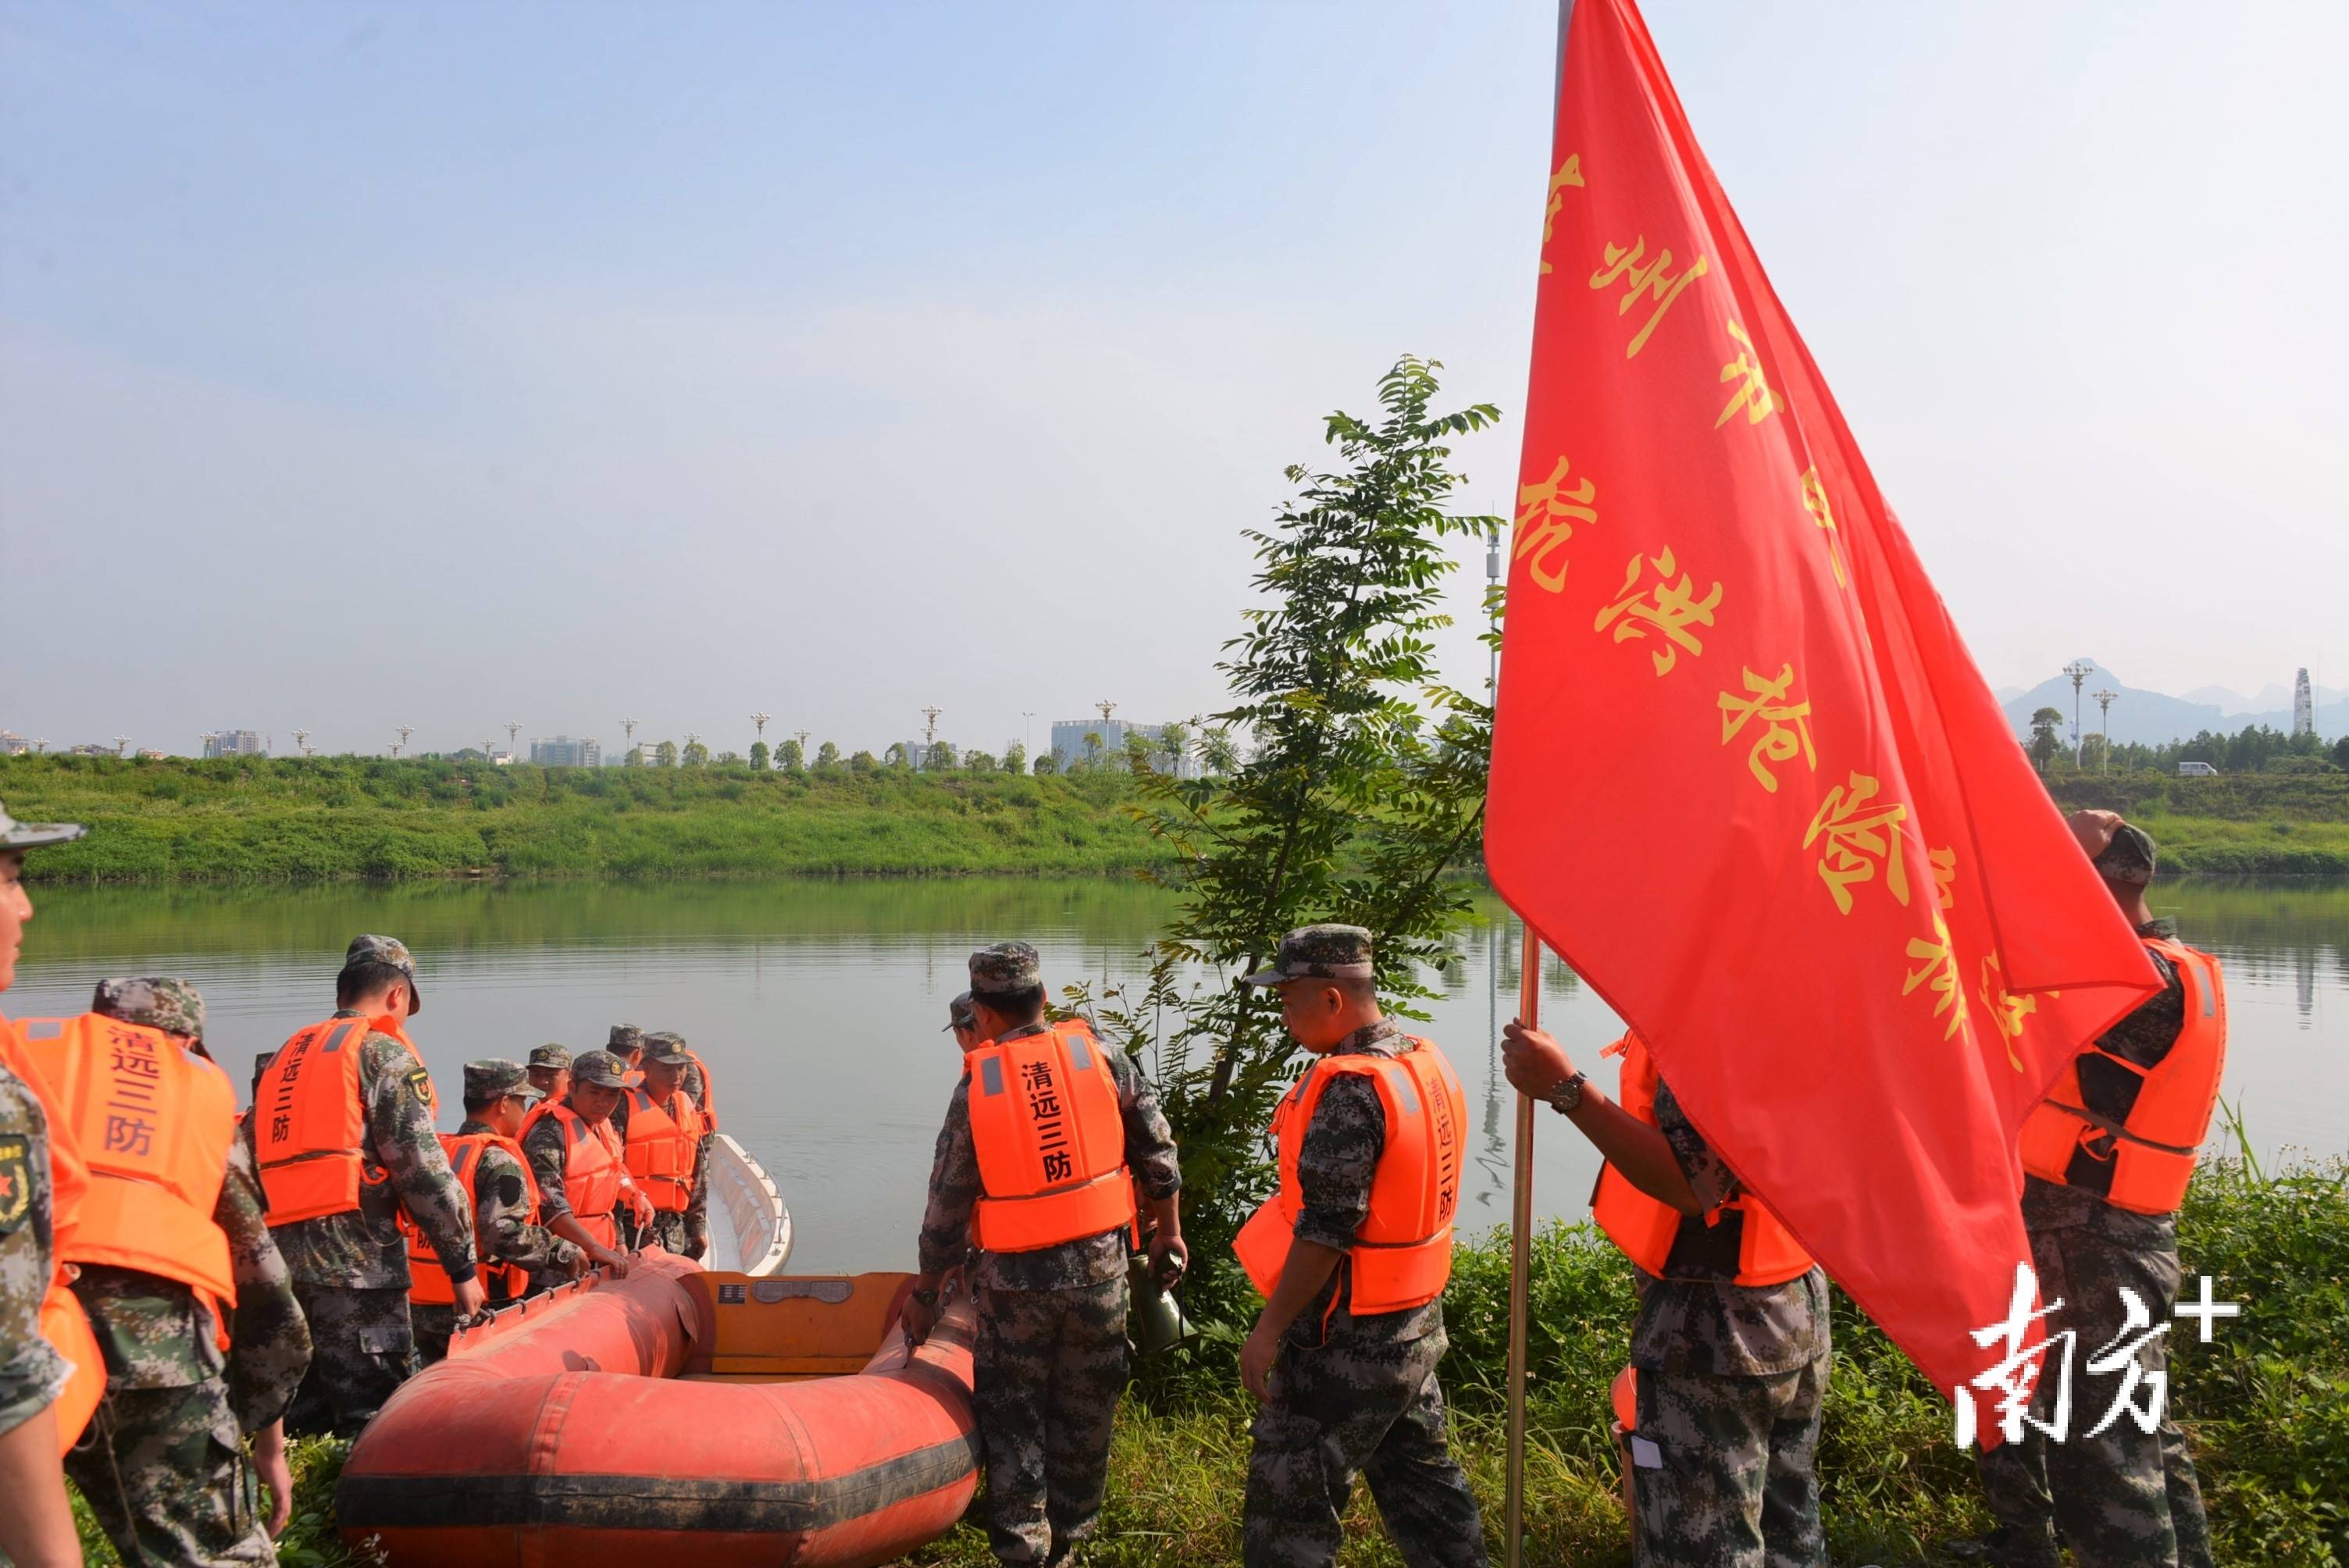 走进抗洪抢险“国家队” 聆听一艘“生命之舟”的传奇 - 中国军网